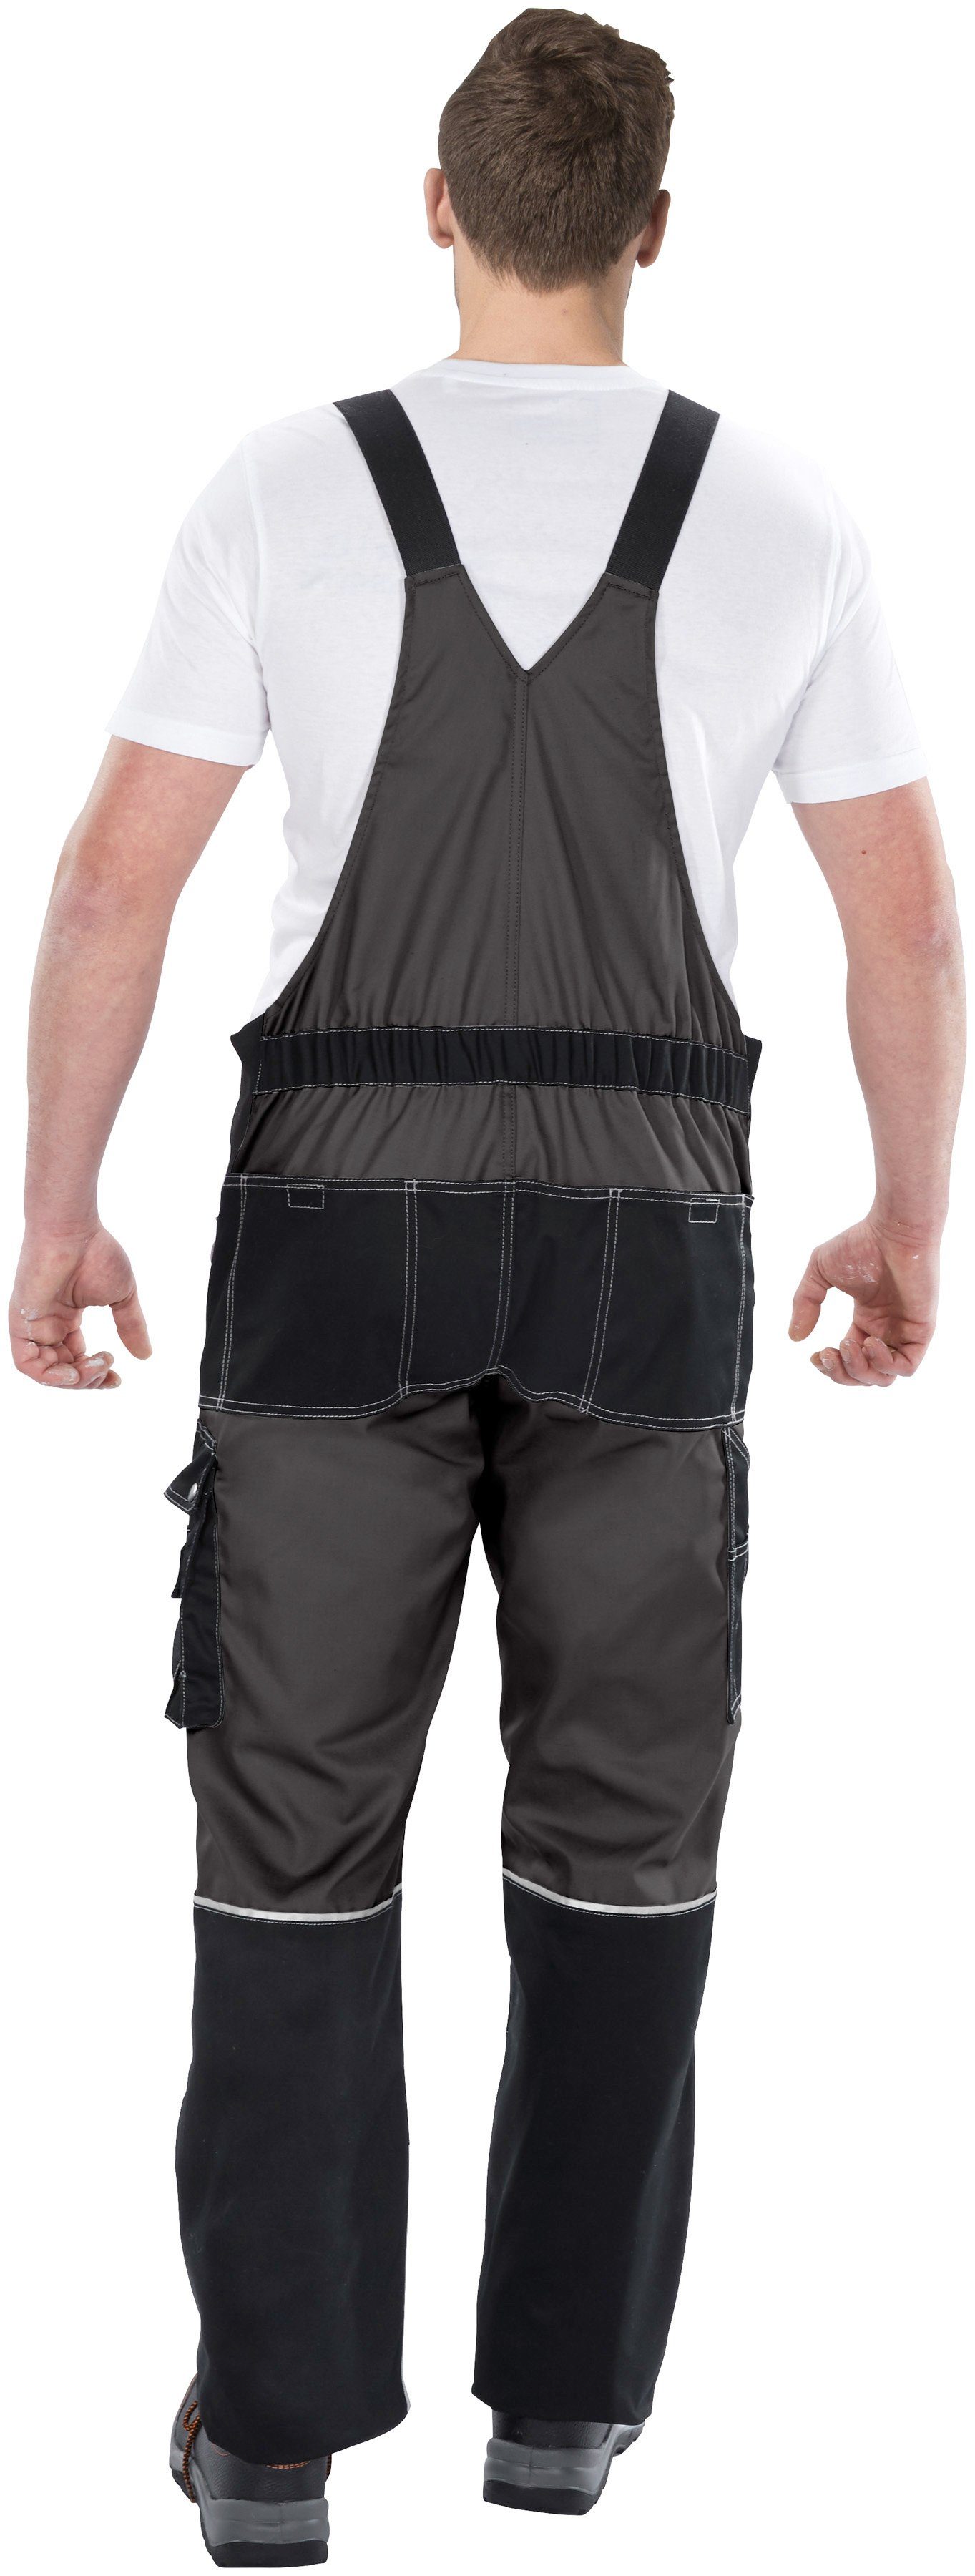 Latzhose dehnbarer Worker Kniebereich, mit robust, mit Country grau-schwarz verstärktem Northern 11 Bund, Taschen